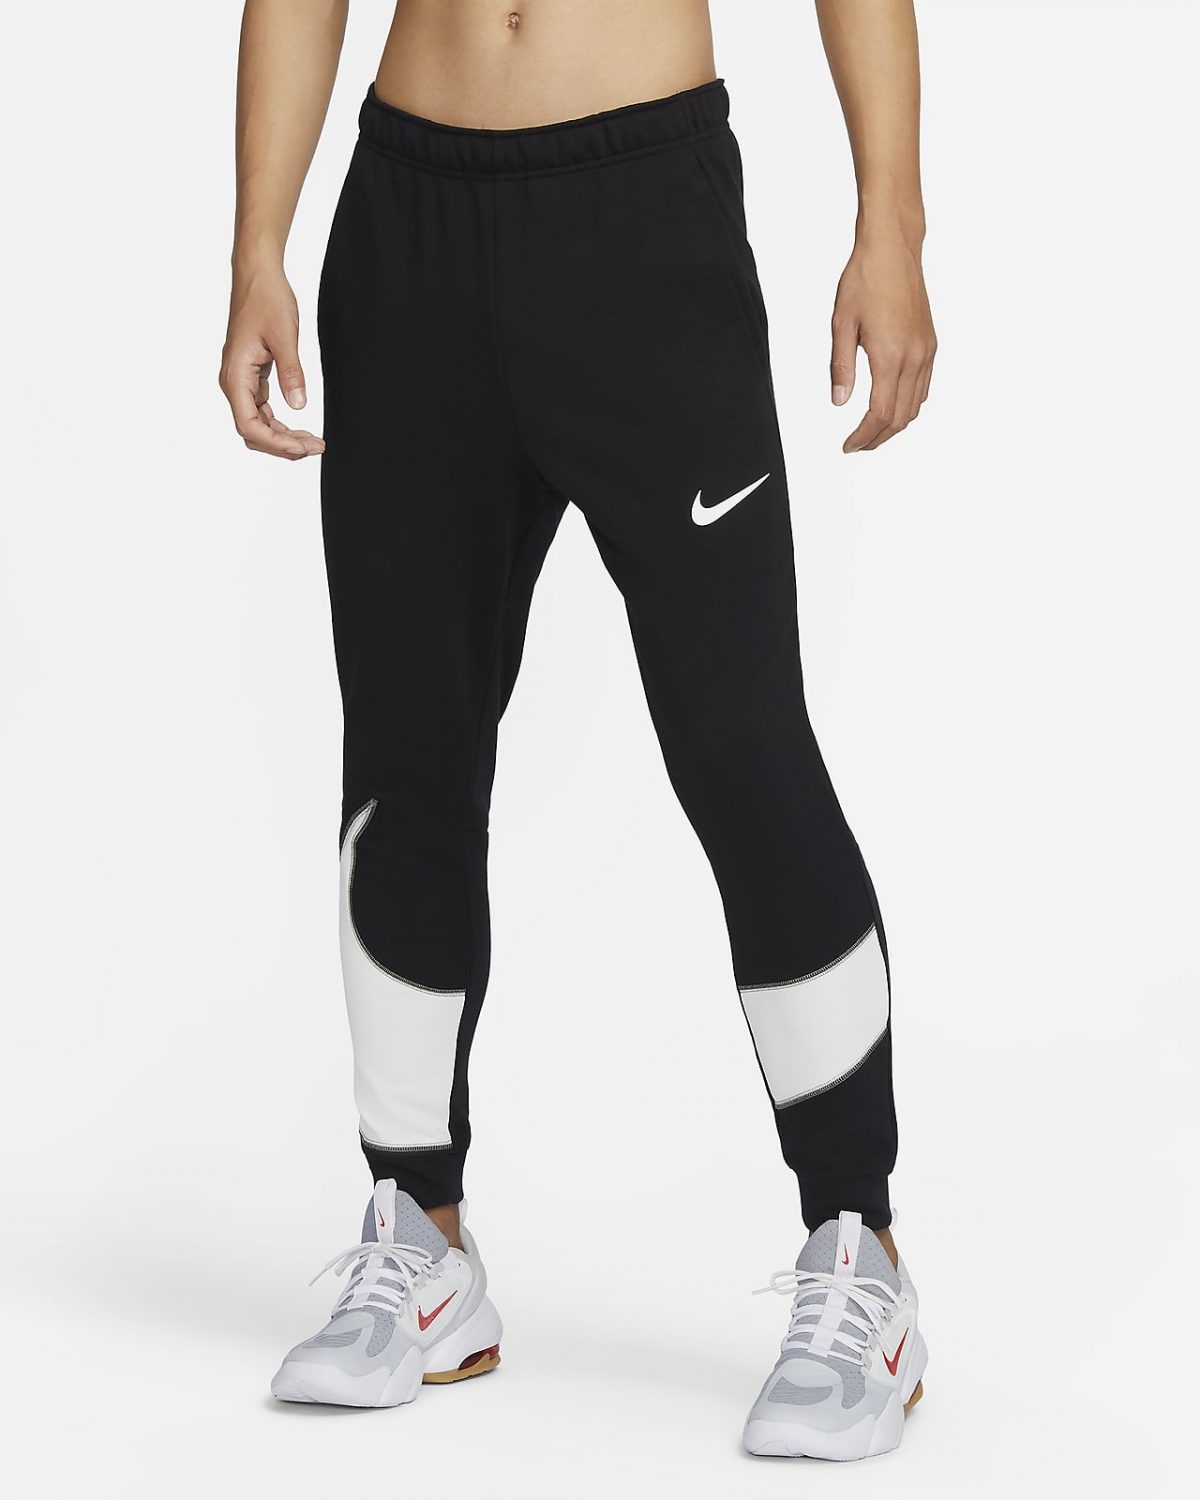 Мужские брюки Nike Dri-FIT черные фото